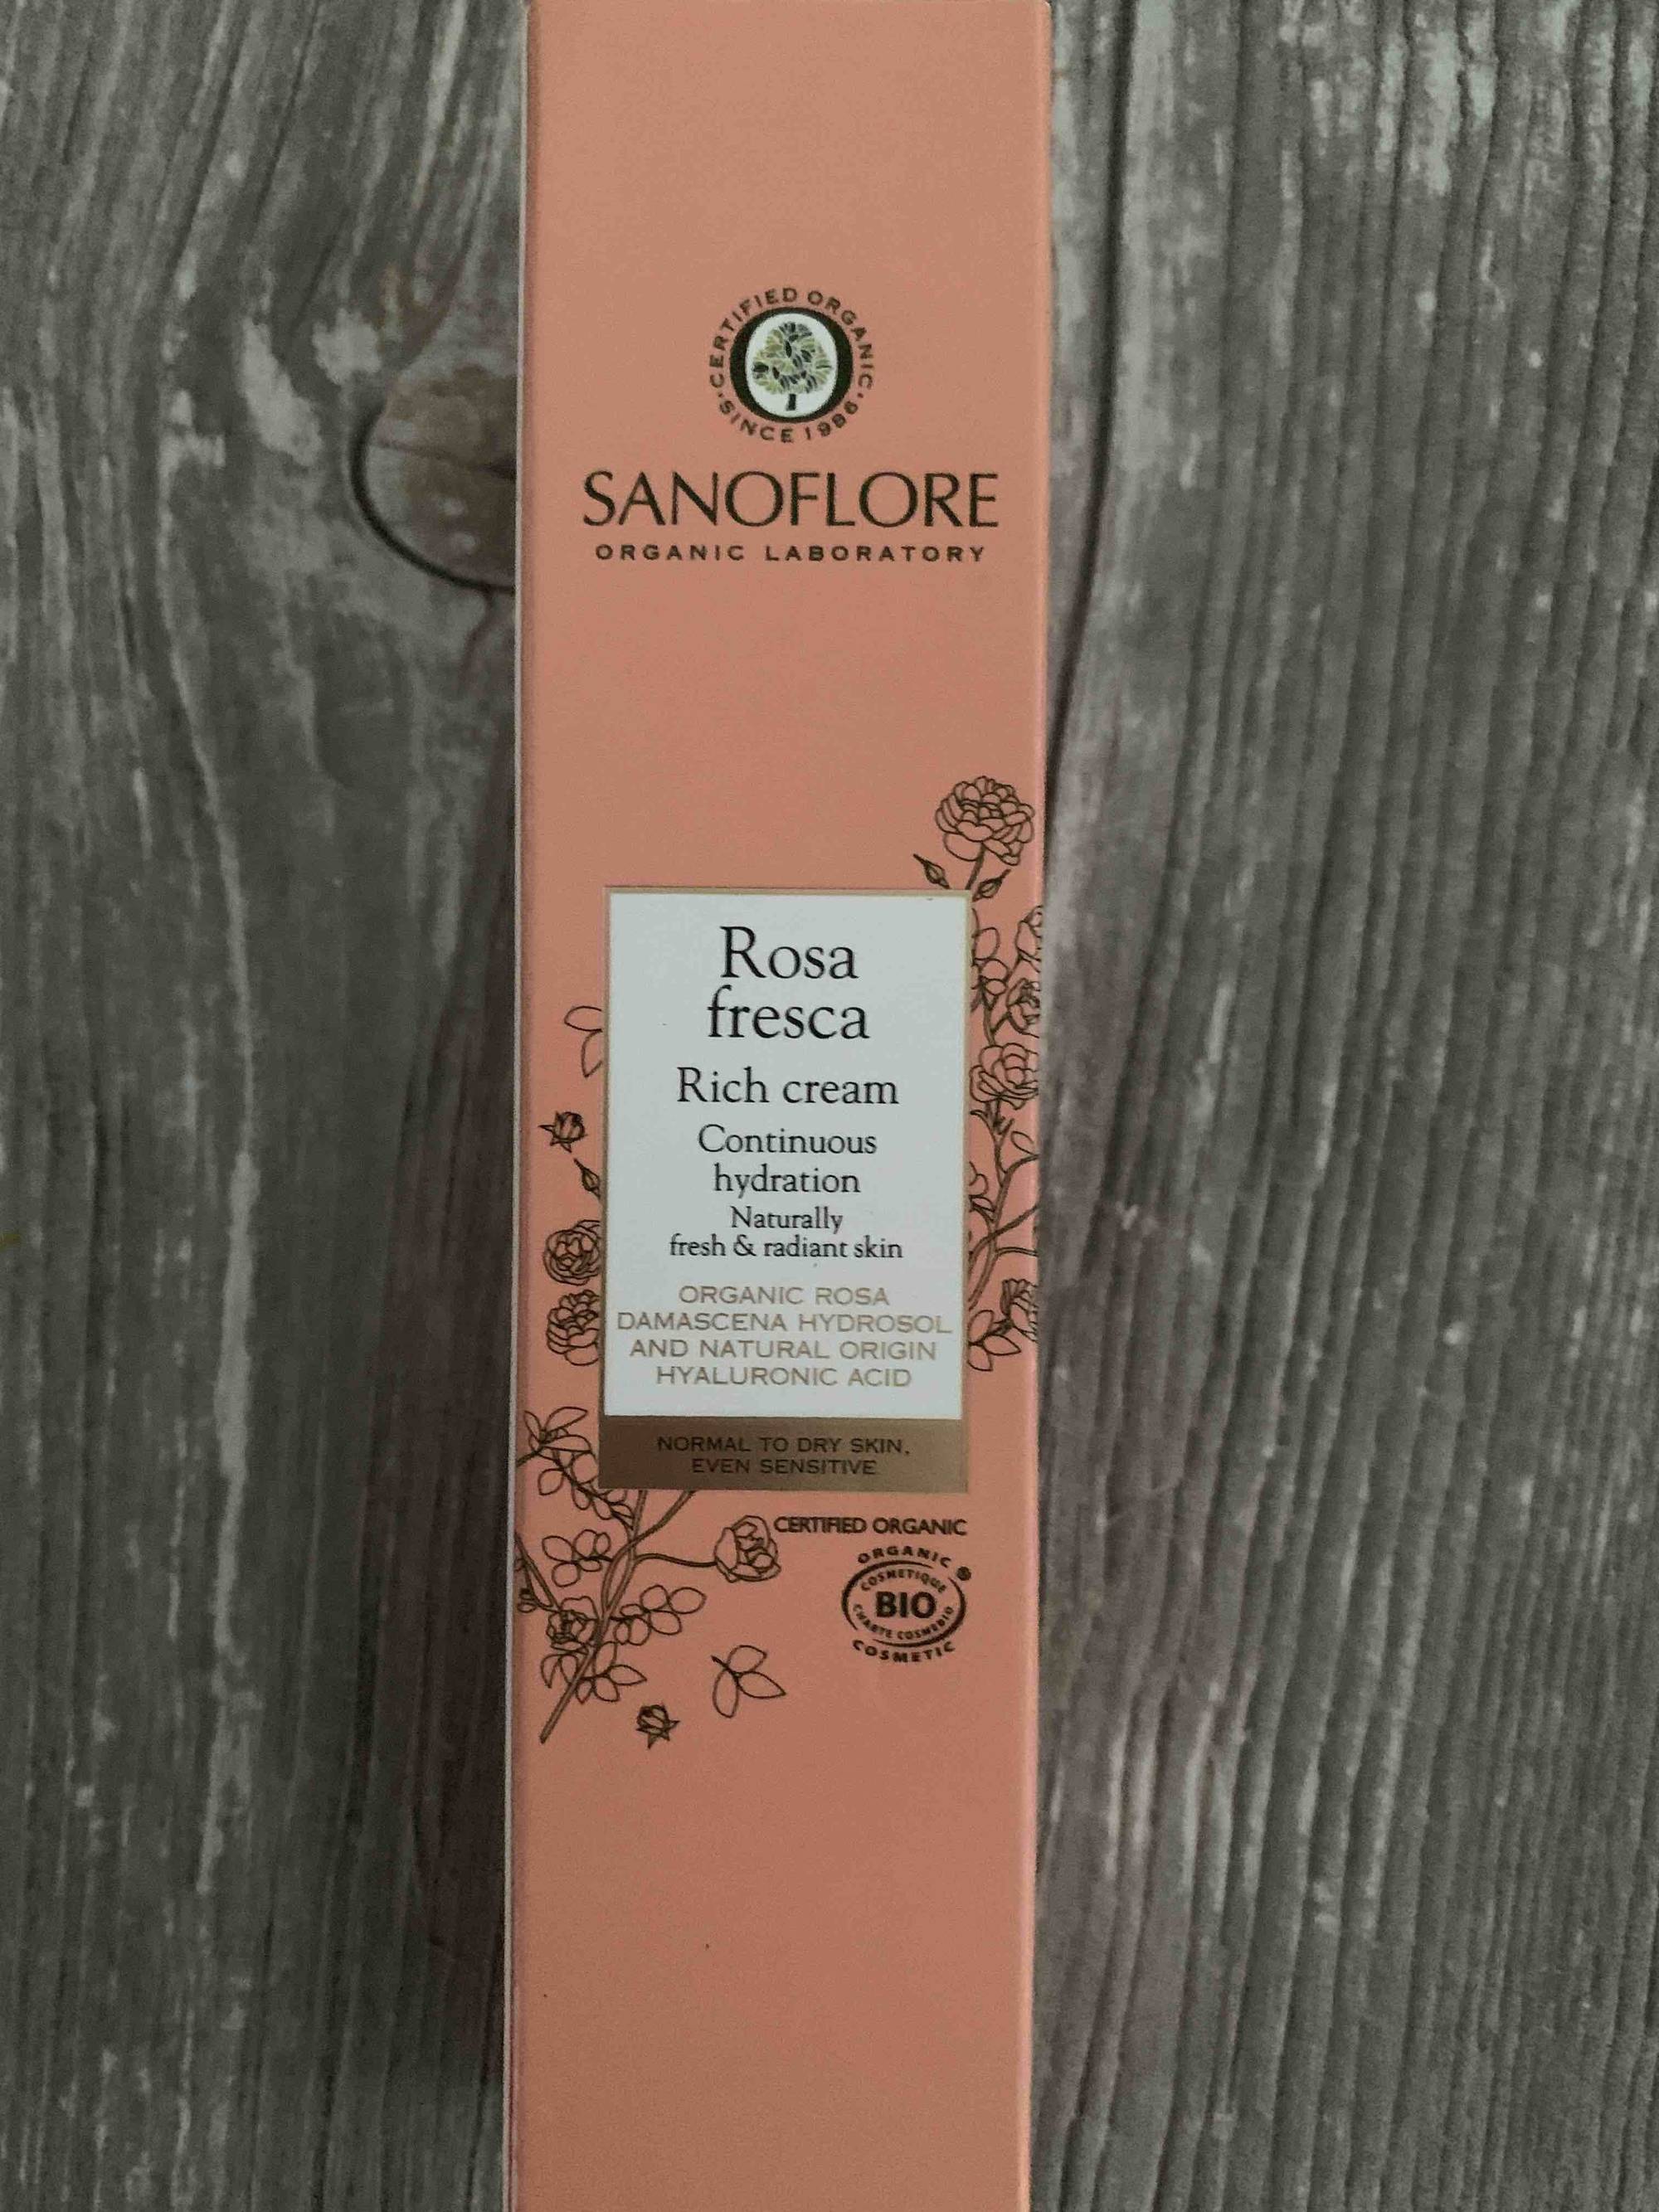 SANOFLORE - Rosa fresca - Rich cream